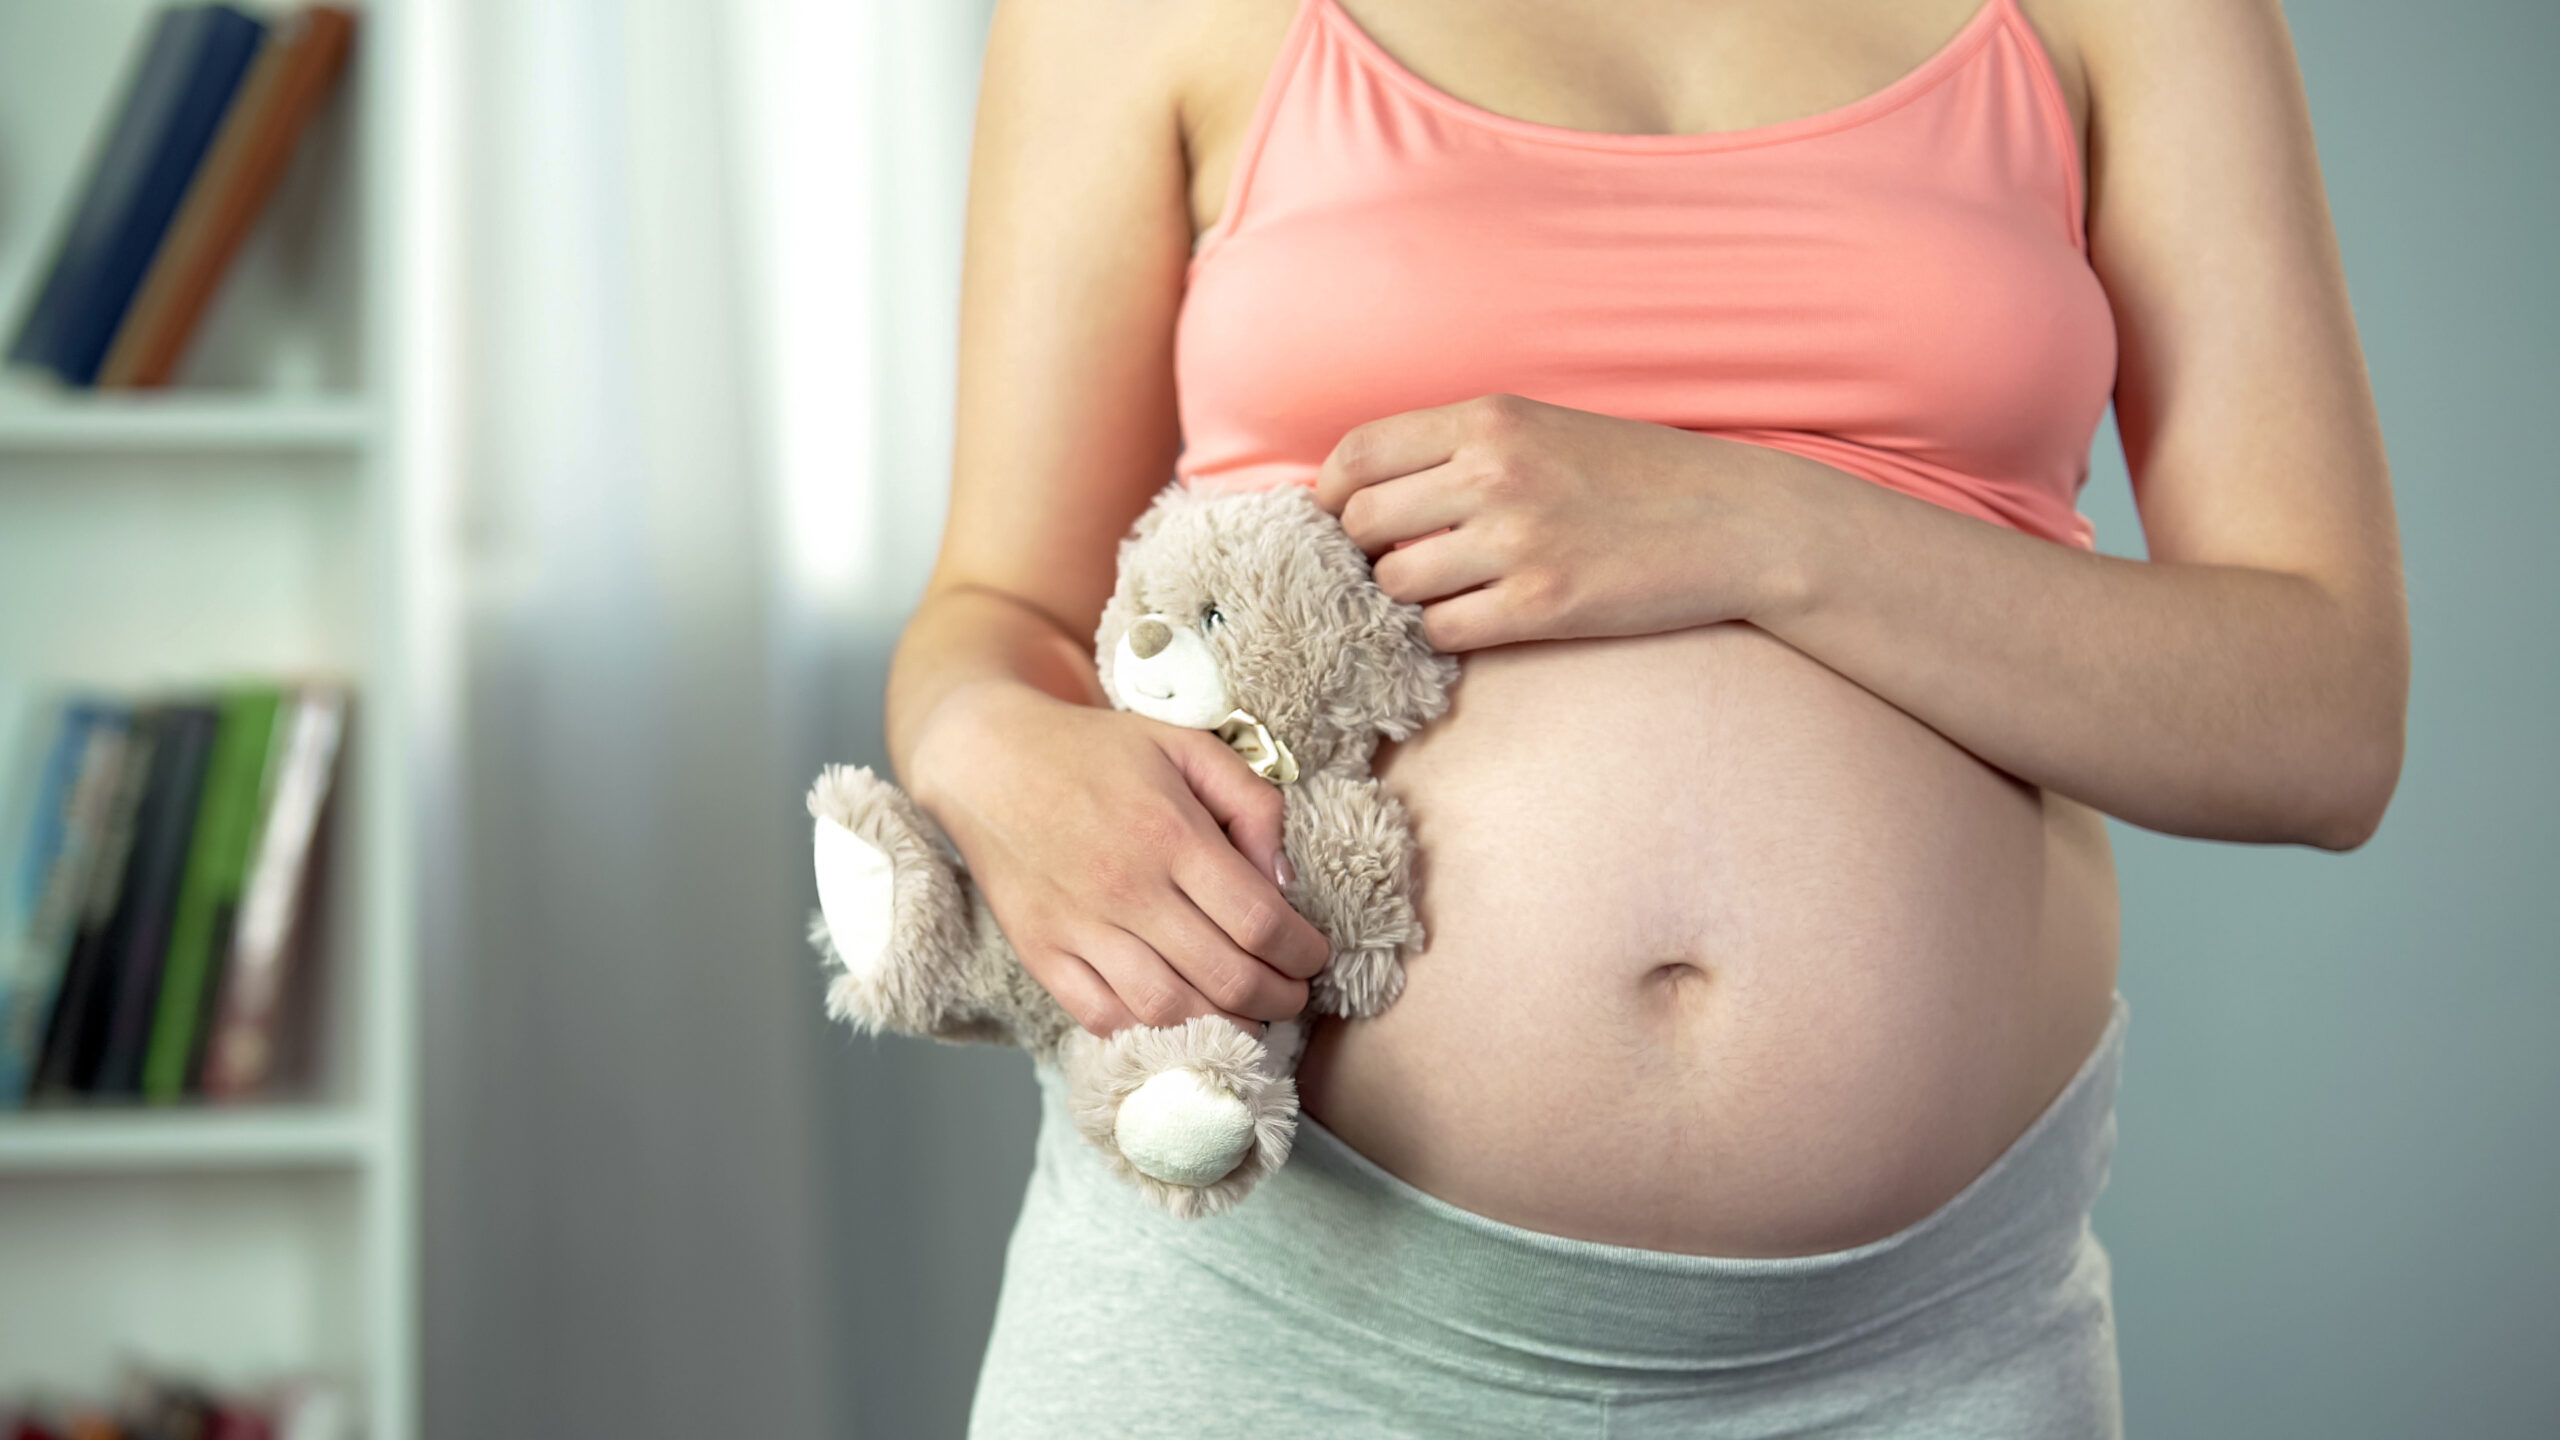 Una mujer embarazada que lleva una camiseta corta con el vientre al descubierto sostiene un osito de peluche a su lado.